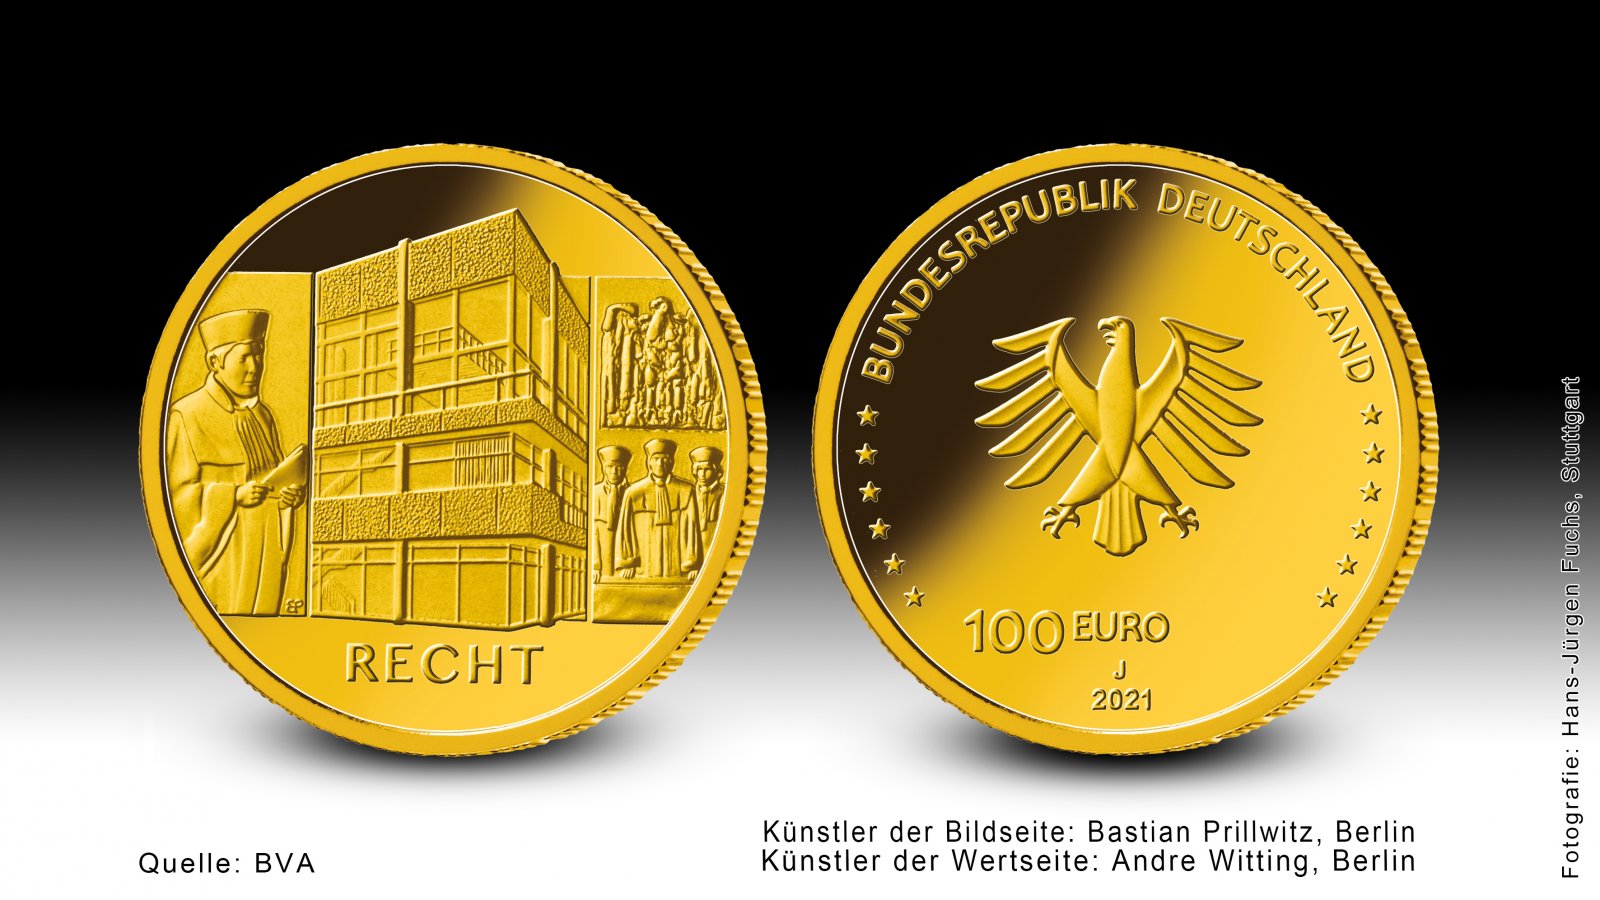 Download 100 euro gold coin 2021 "Säulen der Demokratie - Recht" 